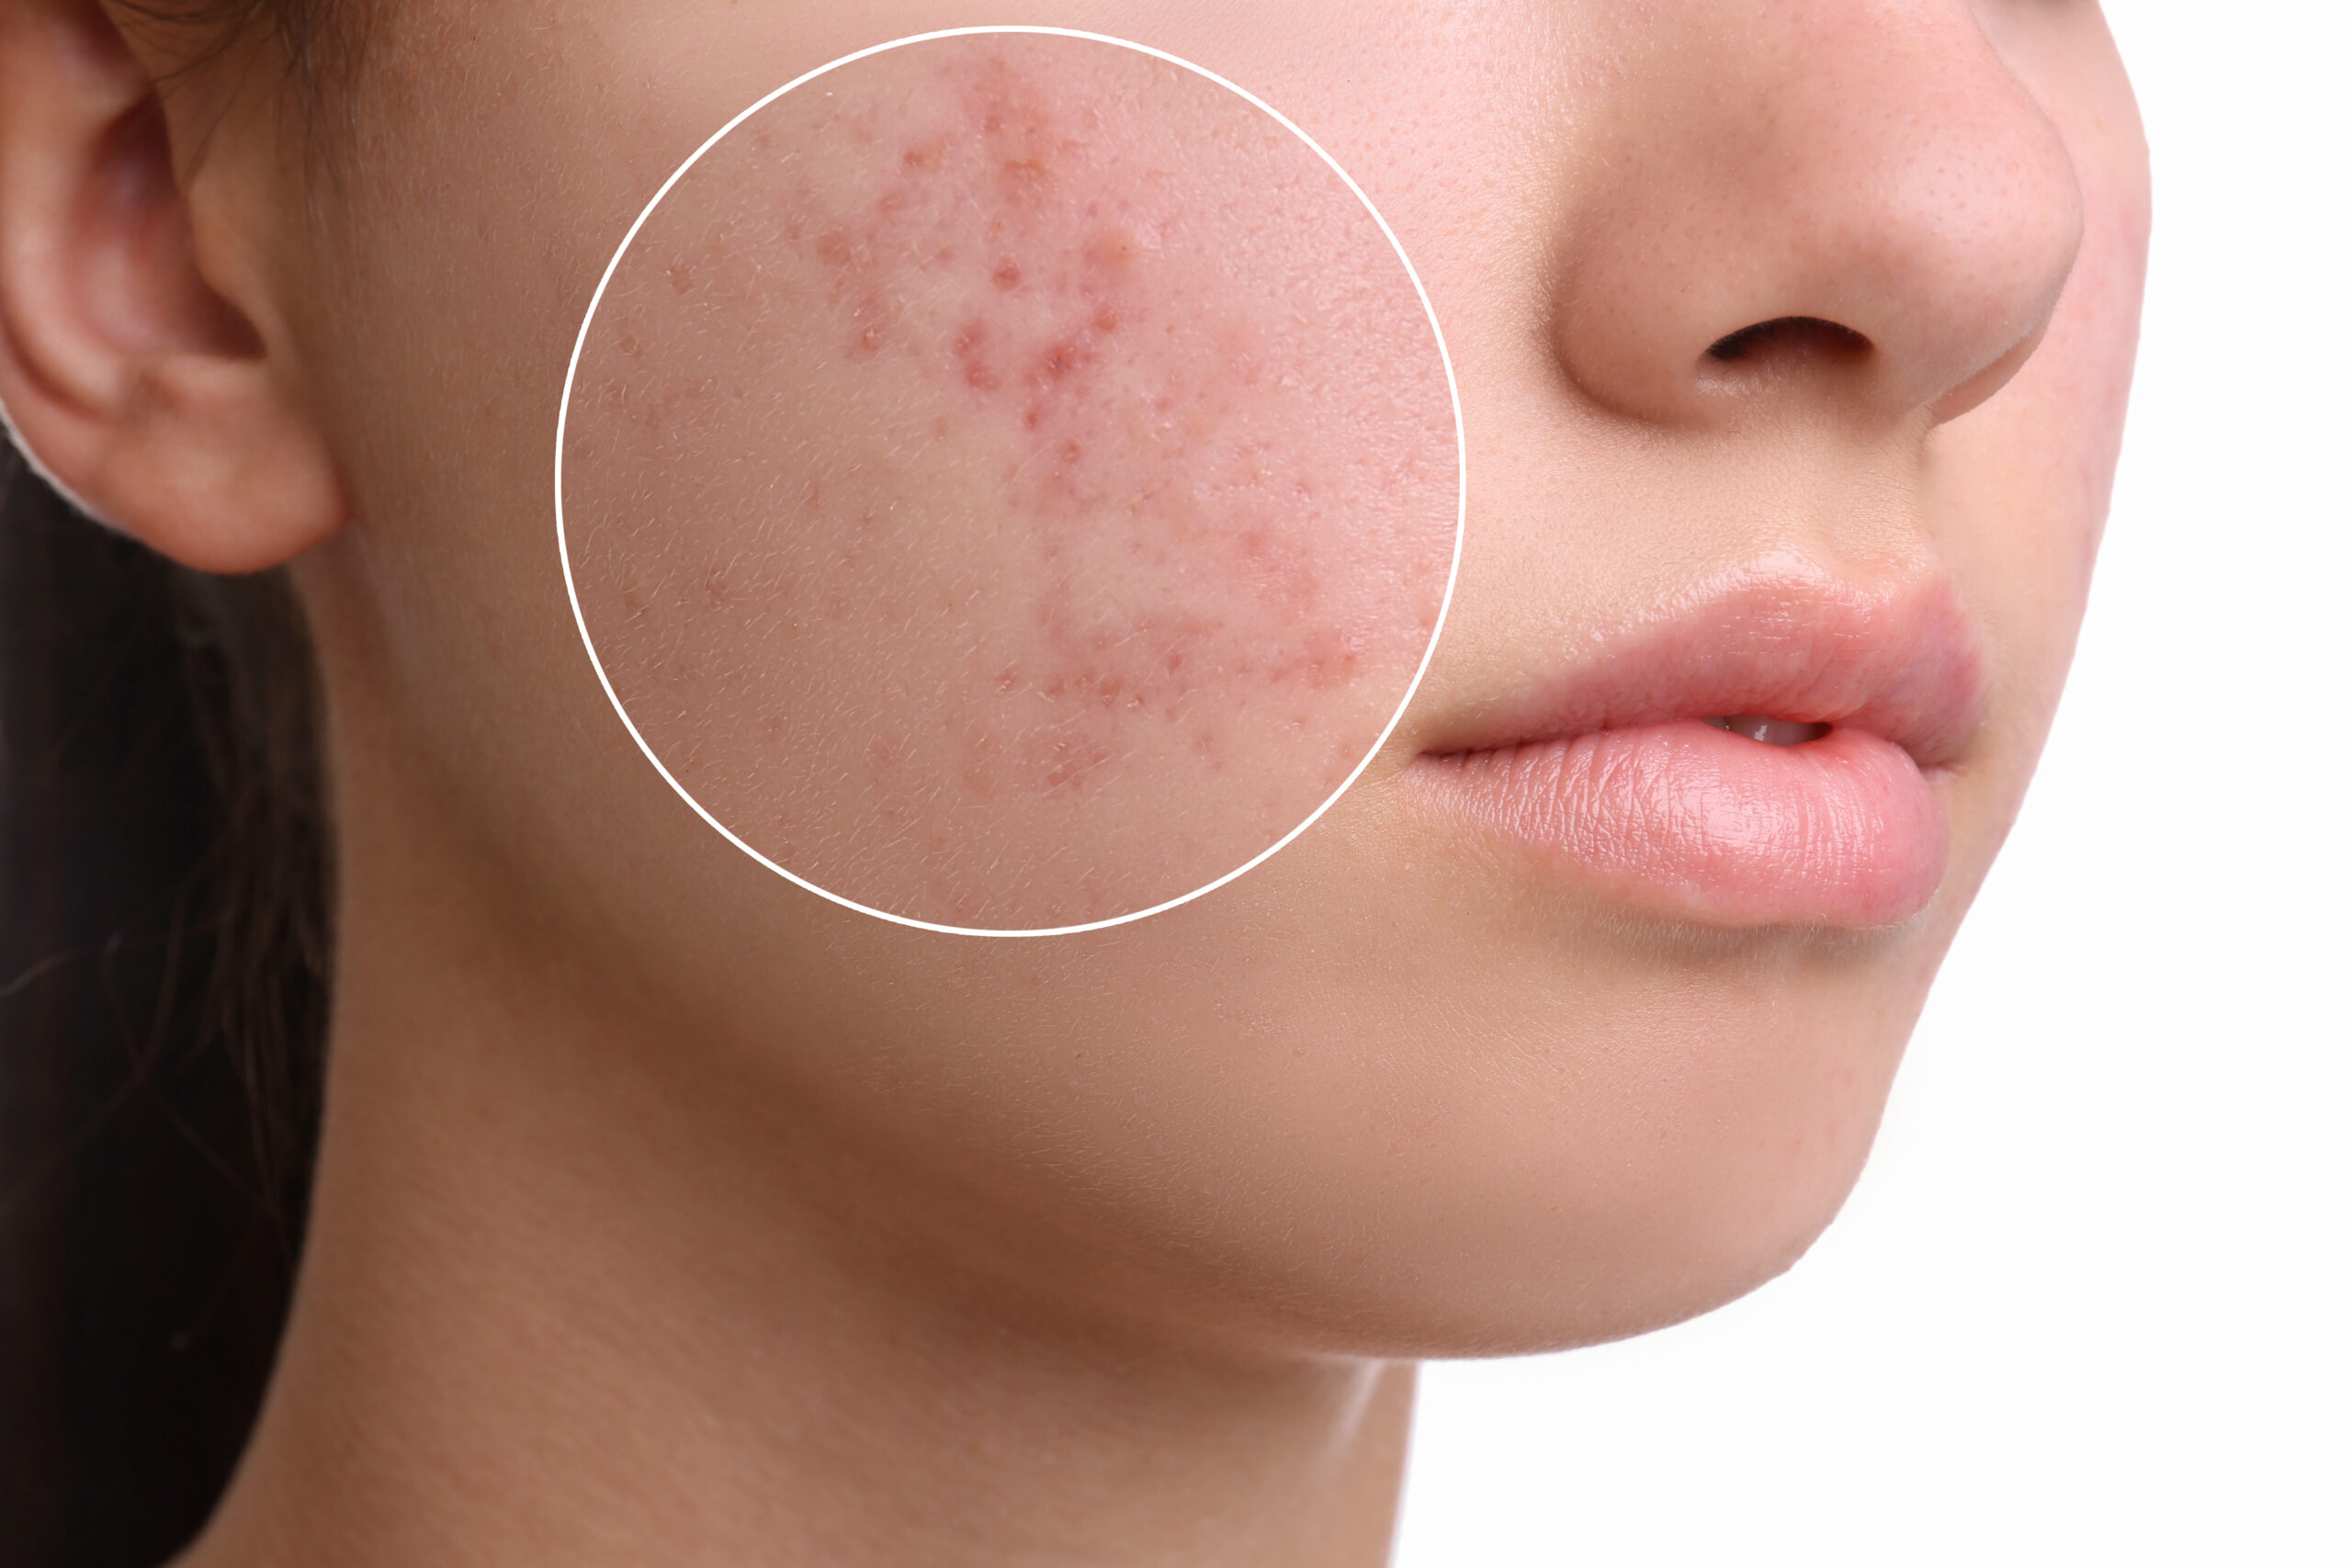 Influenciadora mostra rotina com acne grave; conheça a doença, as causas e os tratamentos